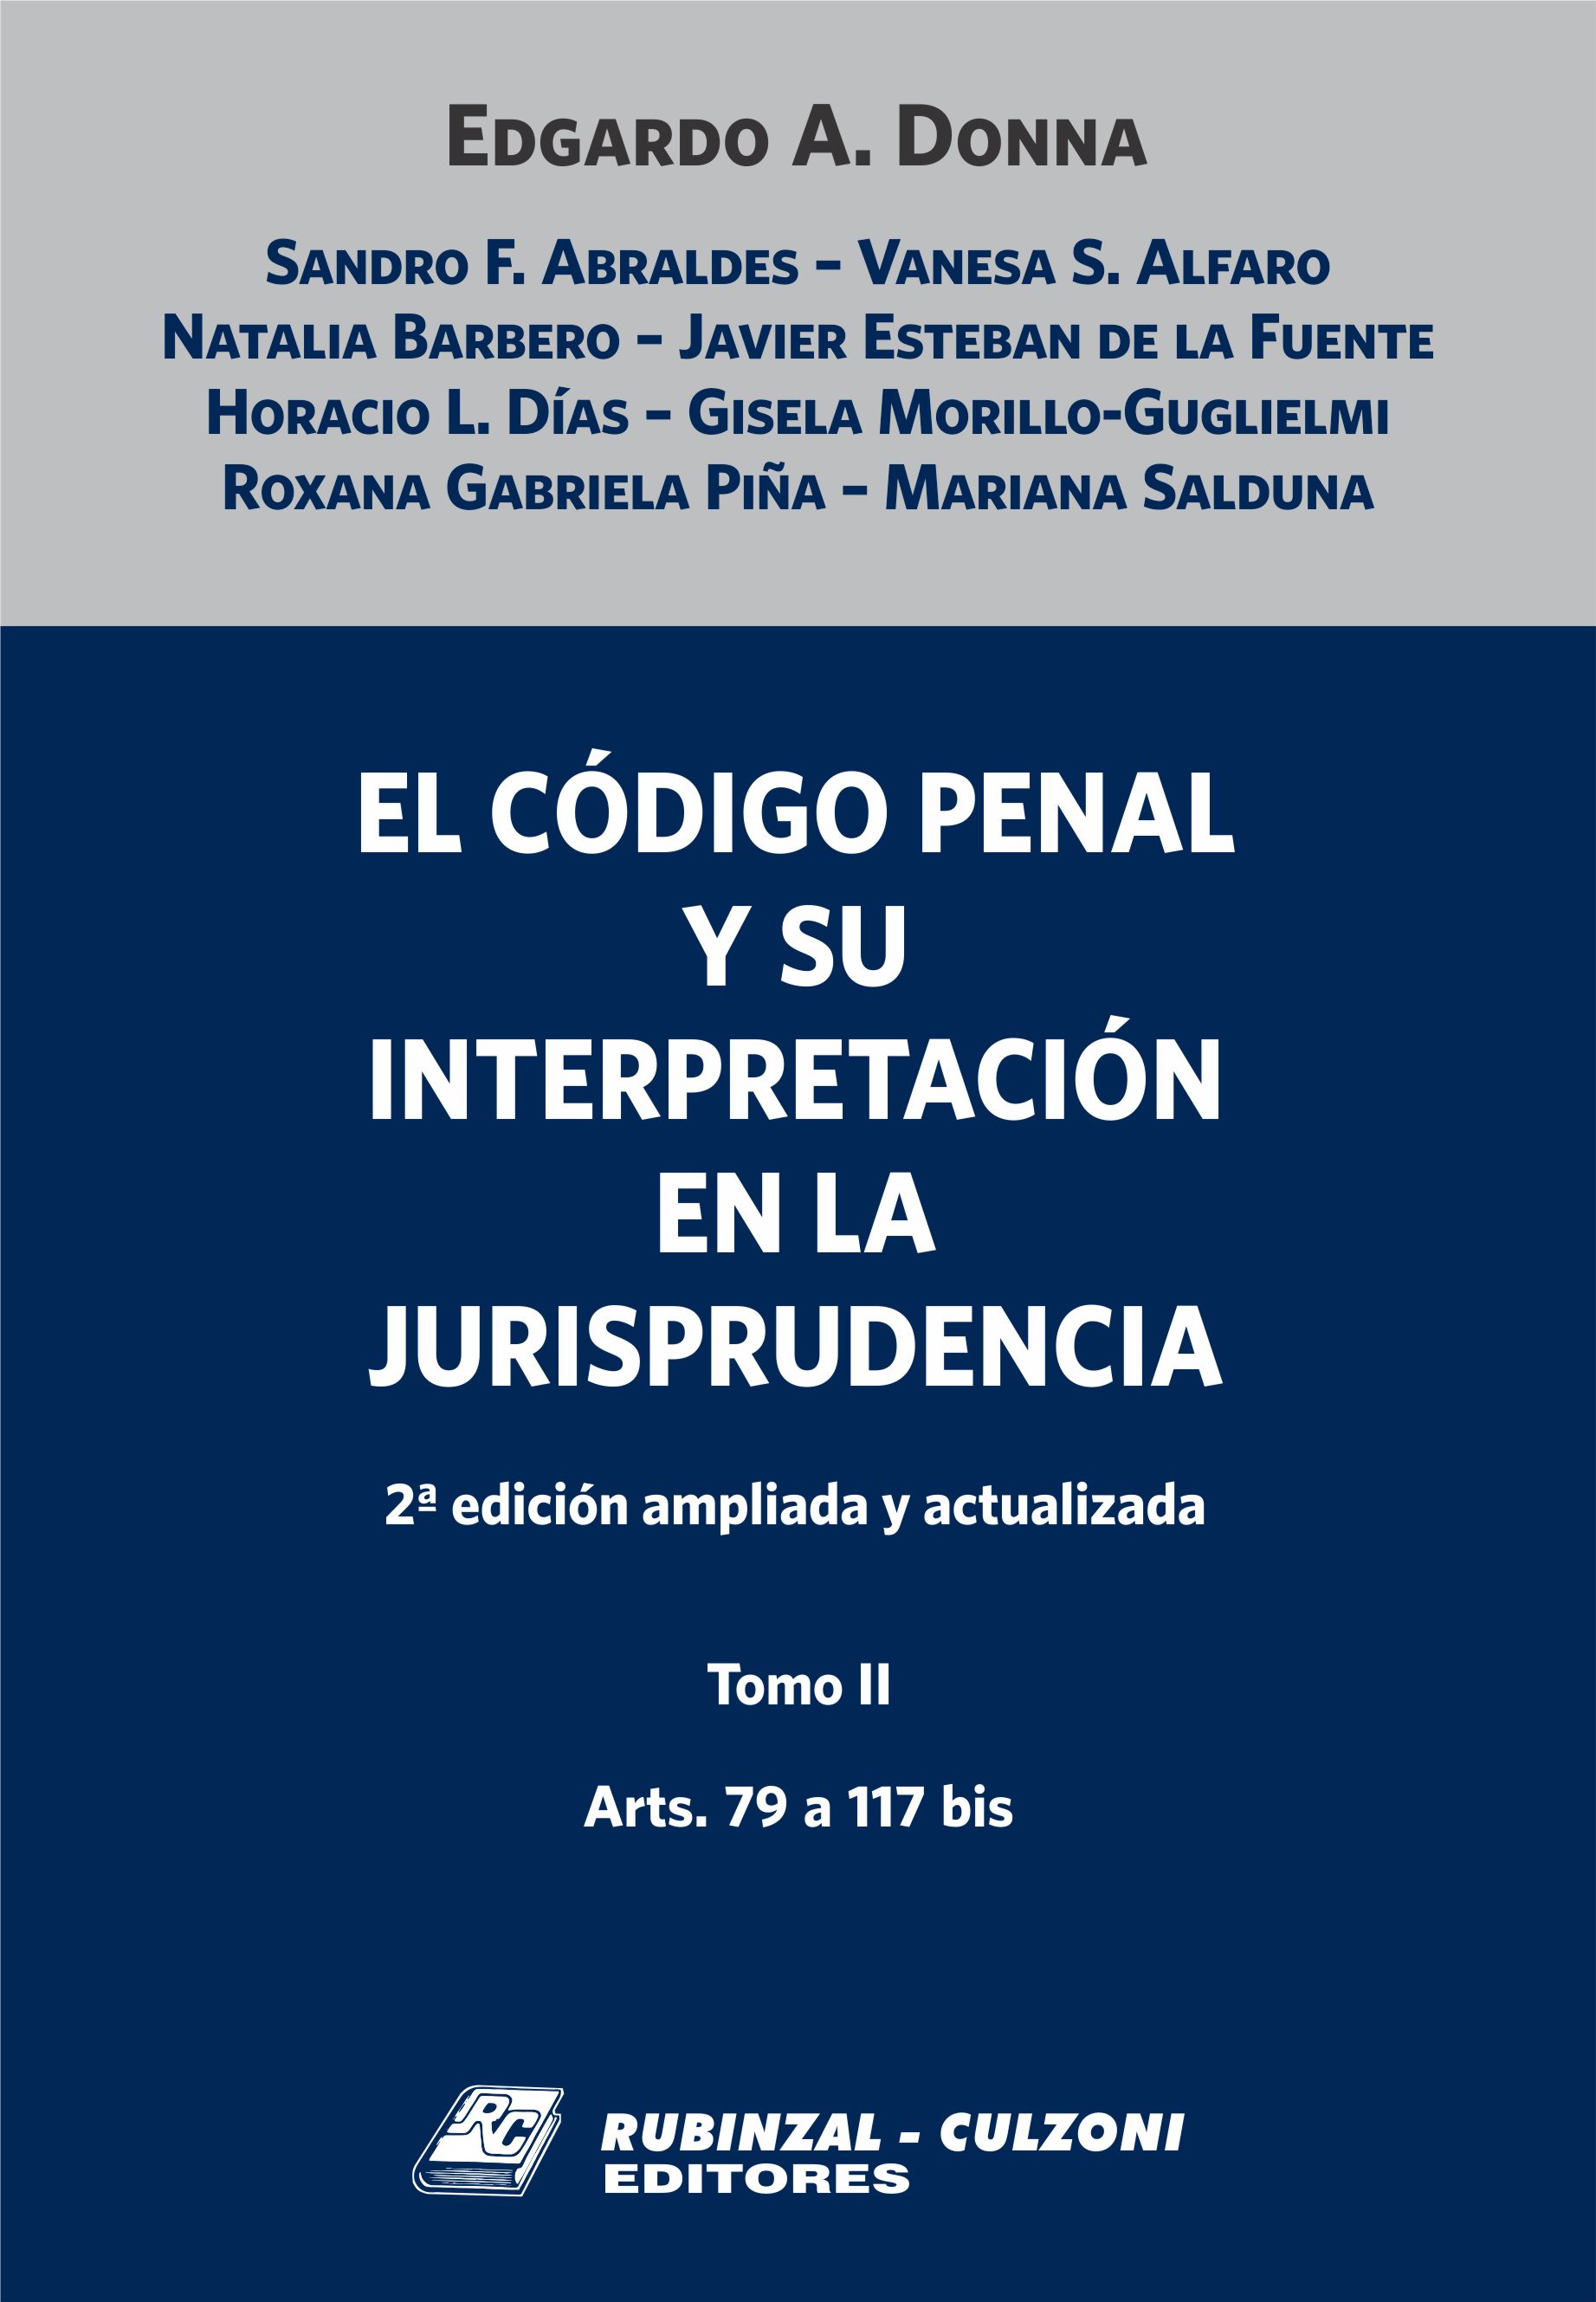 El Código Penal y su interpretación en la Jurisprudencia. - Tomo II. 2ª Edición ampliada y actualizada.